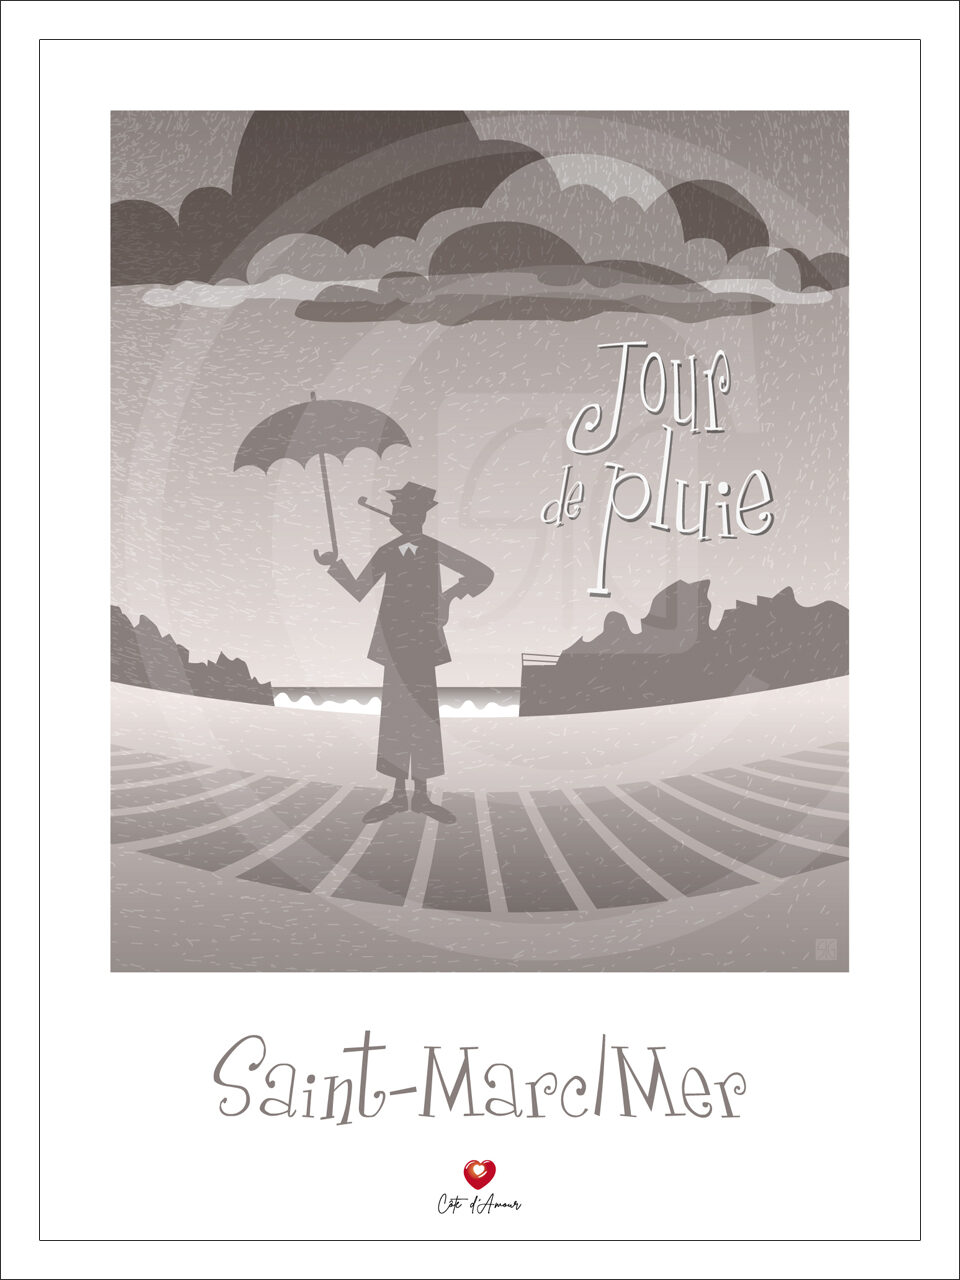 Affiches et tirages d'art JOUR DE PLUIE Mr HULOT SAINT-MARC/MER by SIG